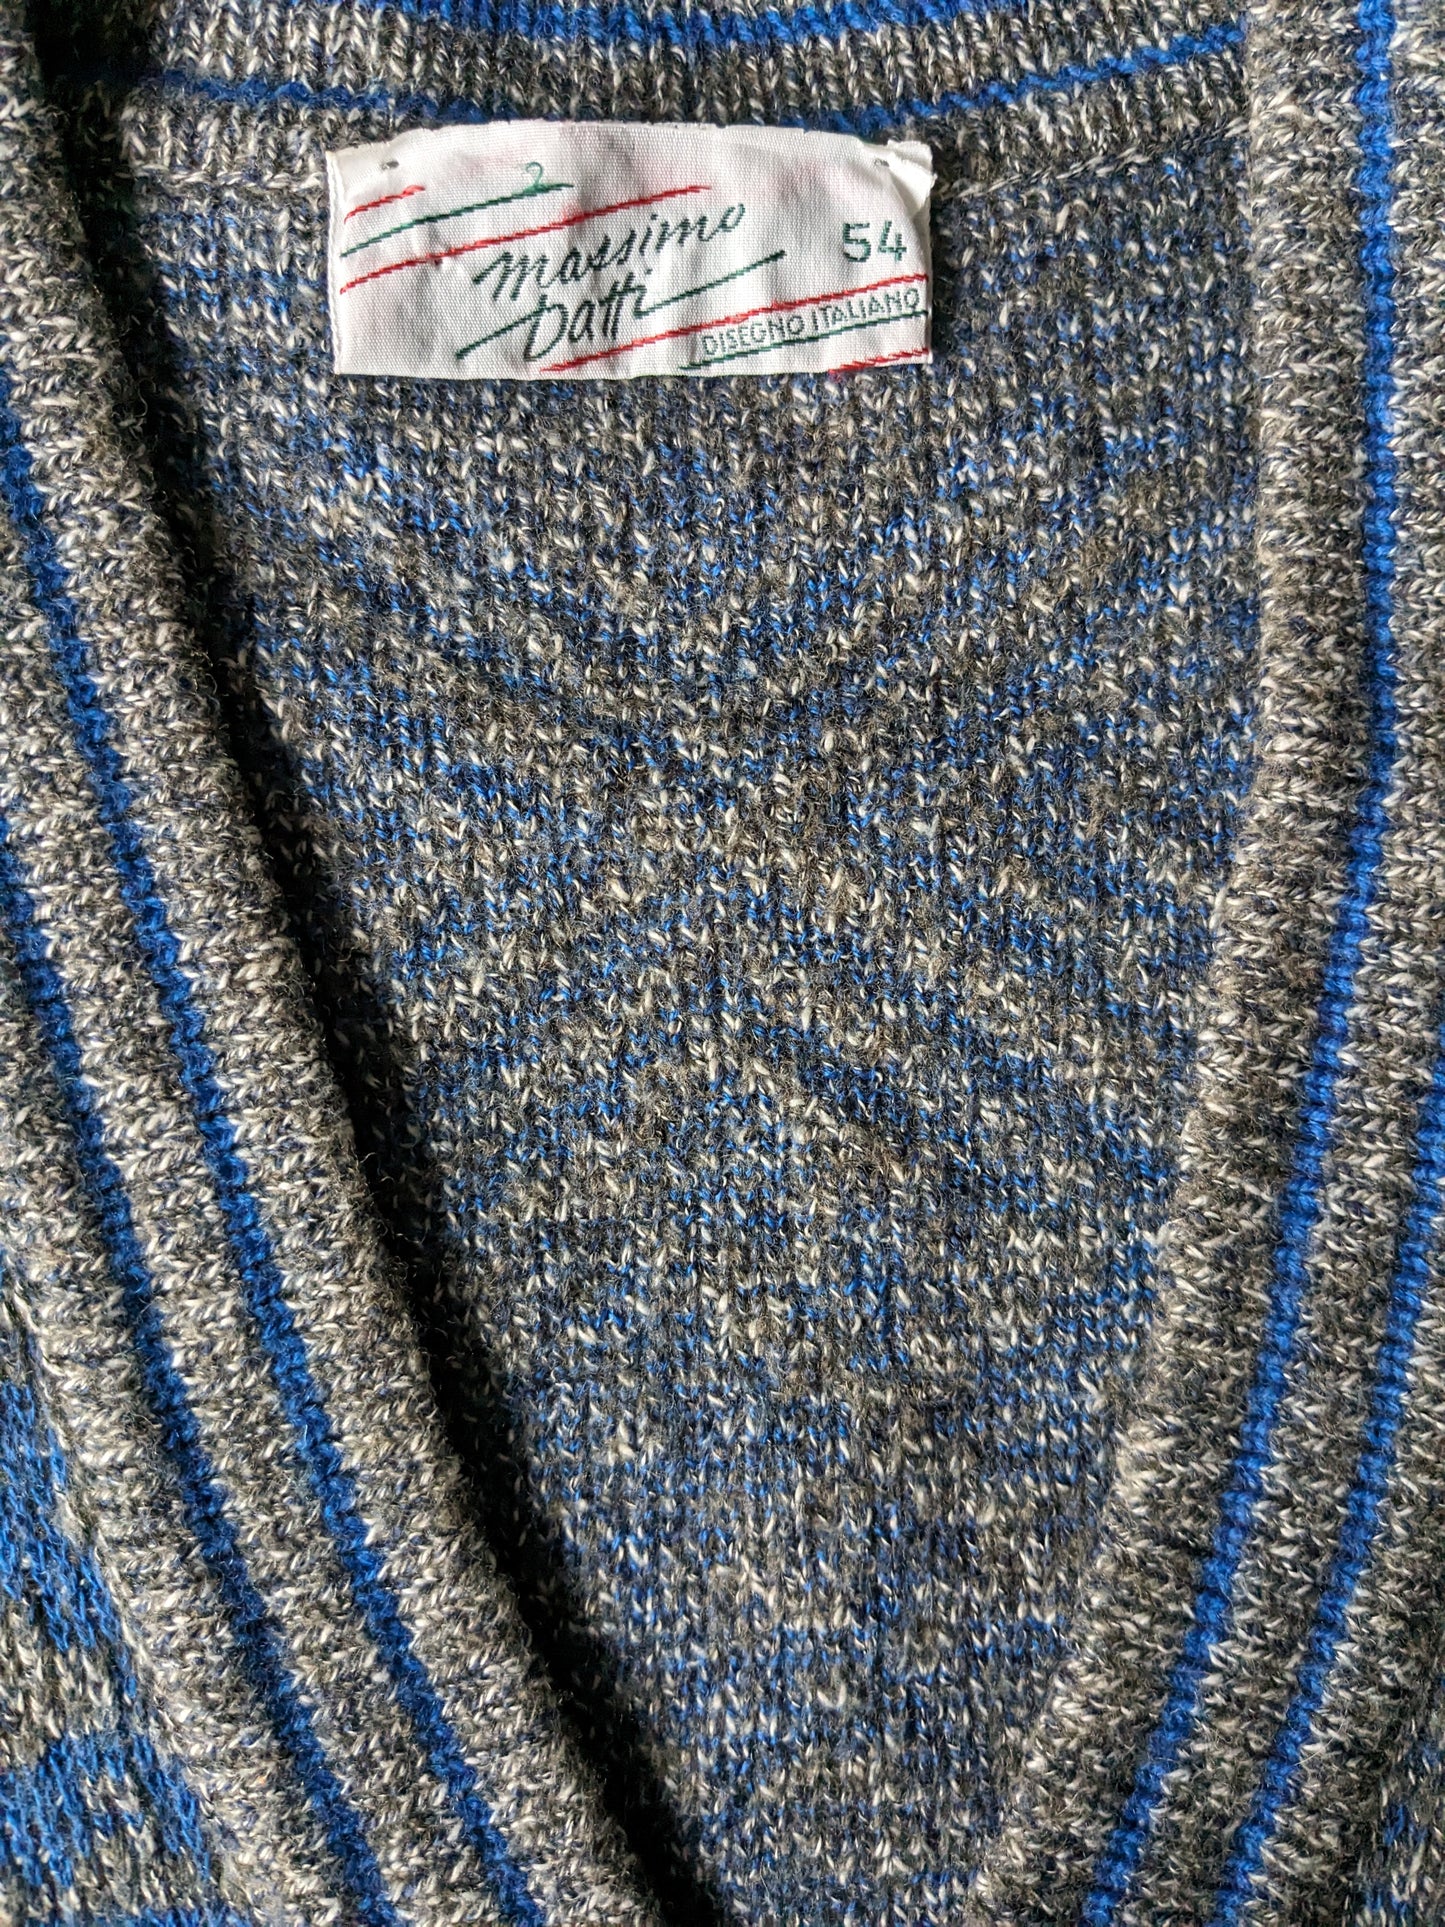 Maglione vintage massimo dati con scollo a V. Colorato blu grigio. Dimensione L. (35% lana)